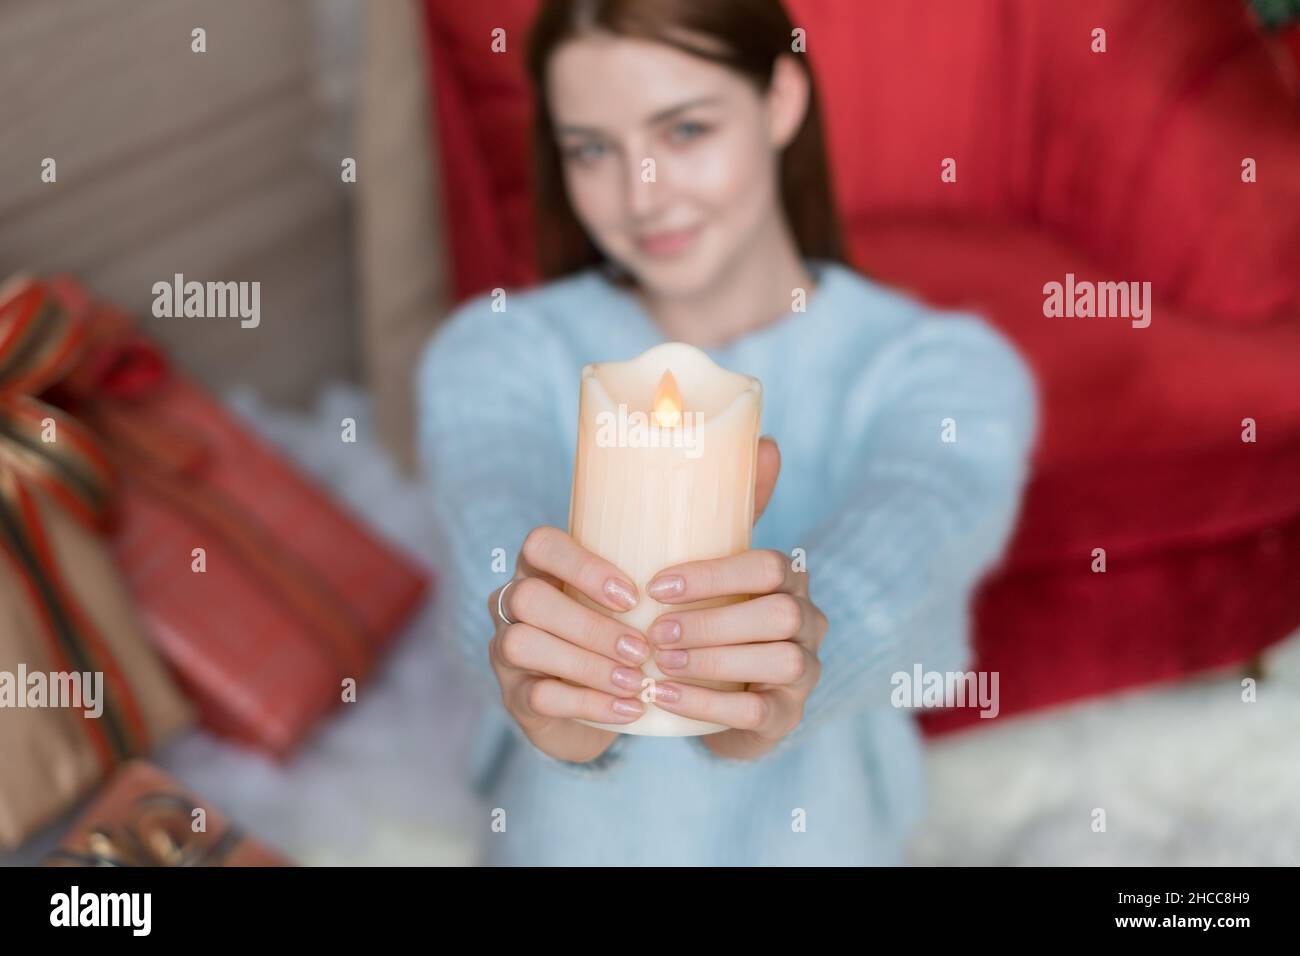 Entzückendes Mädchen sitzt und hält dicke weiße Wachskerze in ihren Händen. Verschwommener Hintergrund, Nahaufnahme, Weihnachtsfeiertage. Stockfoto